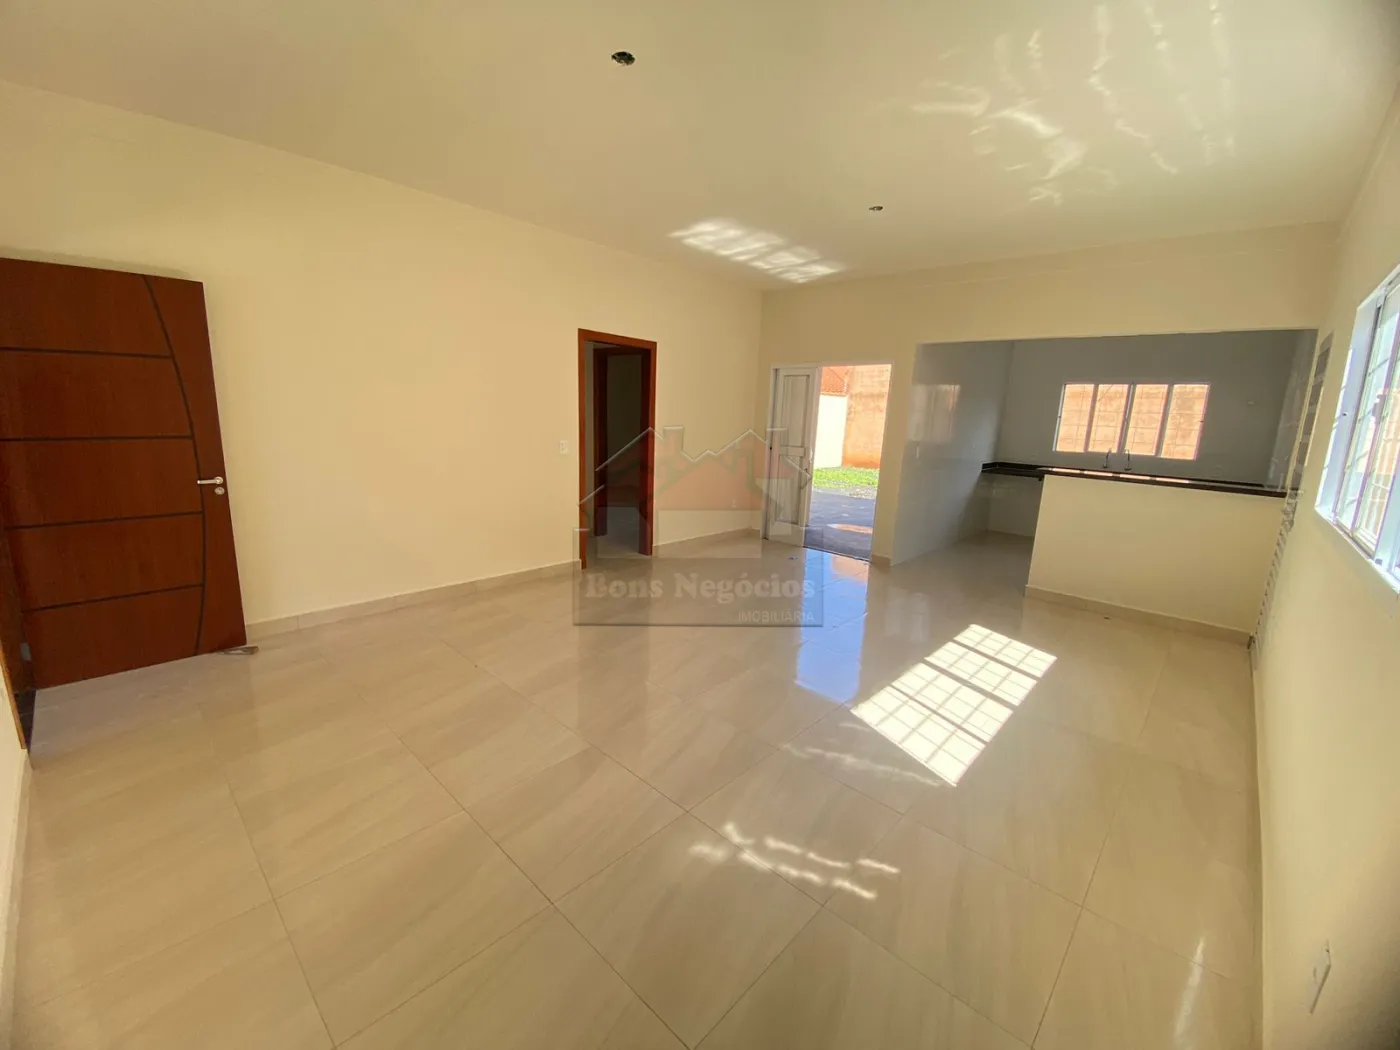 Comprar Casa / Padrão em Ribeirão Preto R$ 490.000,00 - Foto 14